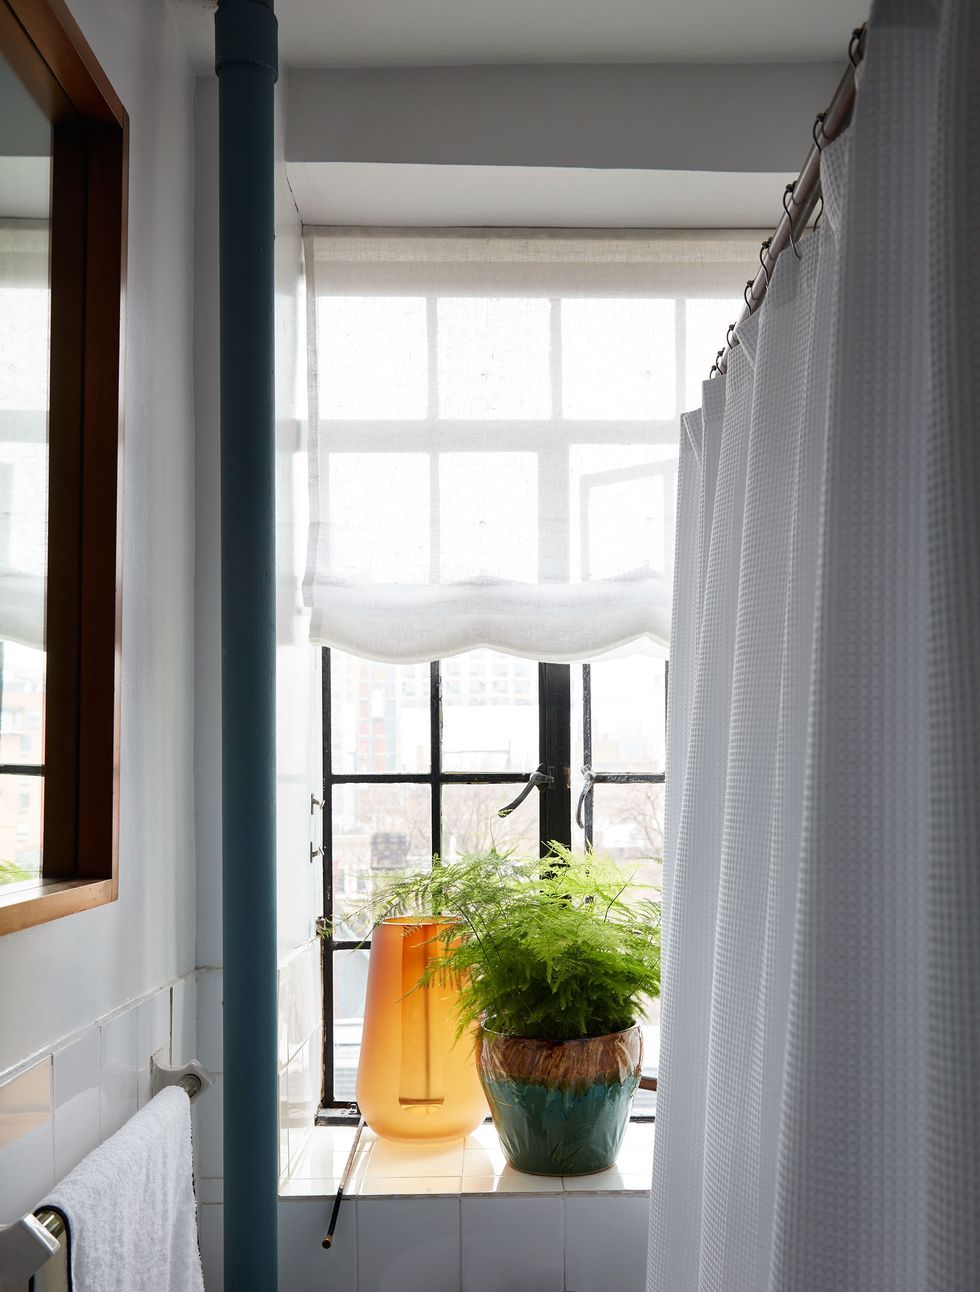 Những chiếc bình thủy tinh màu cam sáng và chậu cây bằng gốm sứ bóng mượt làm nổi bật phòng tắm nhỏ với sắc trắng chủ đạo, kết hợp với chúng là tấm rèm Roman mỏng manh cổ điển cho cửa sổ thêm phần duyên dáng.